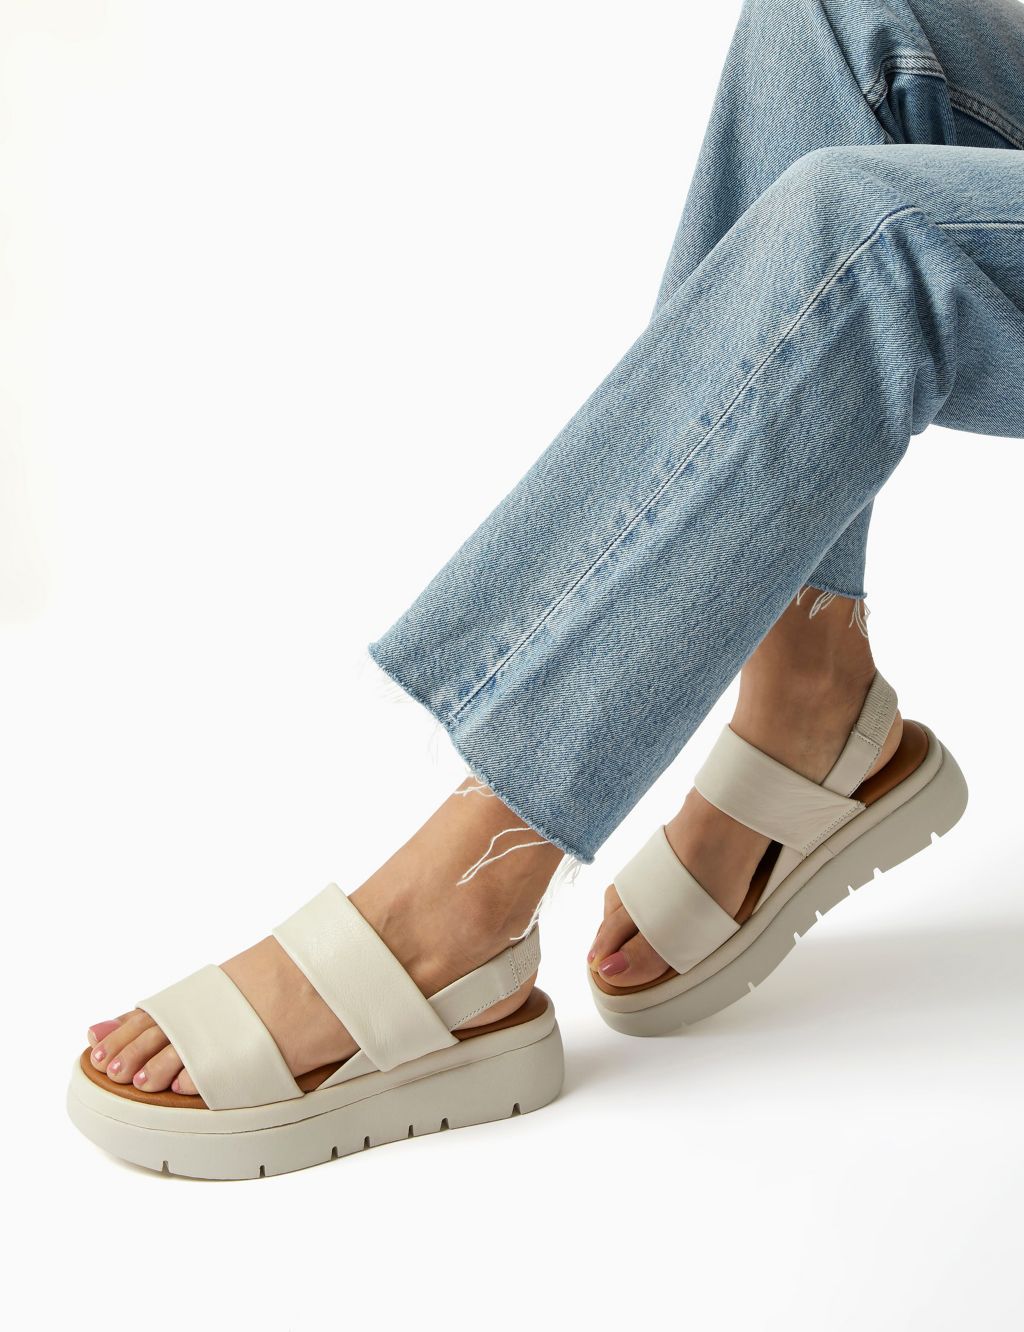 Leather Slip On Flatform Sandals image 1